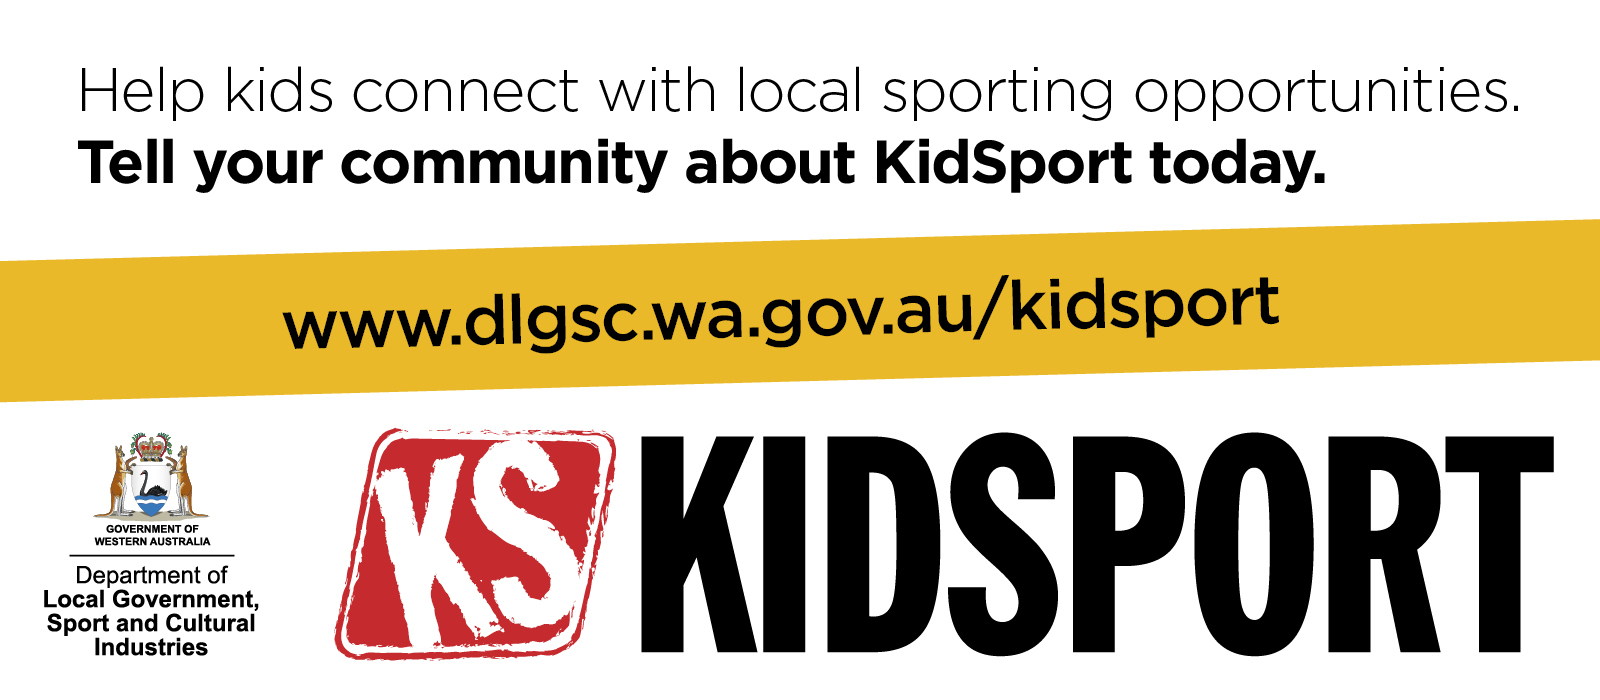 Graphic social media tile to promote KidSport